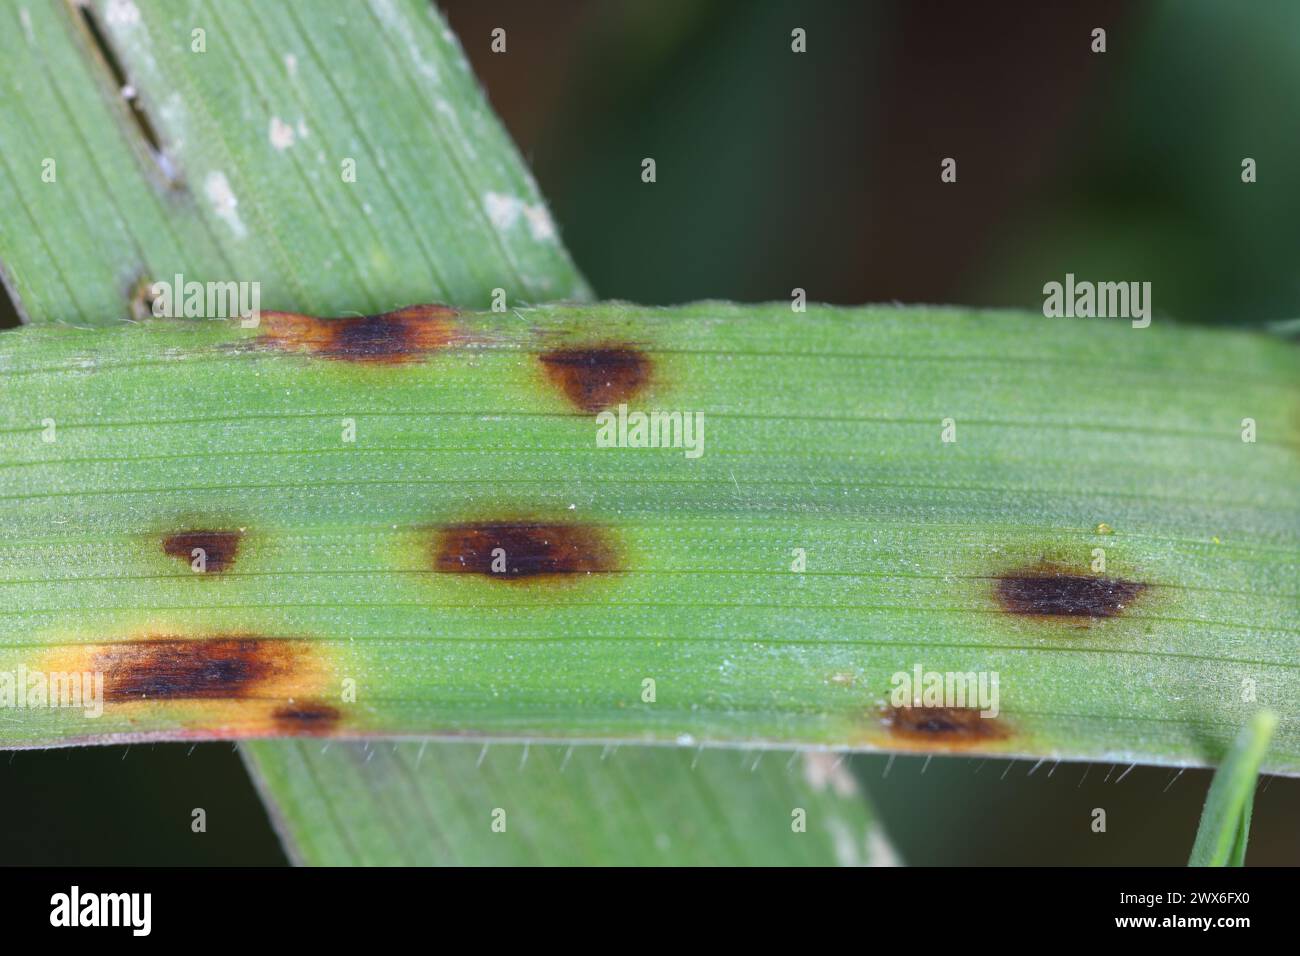 Krankheitssymptome durch pathogene Pilze auf Getreideblättern. Stockfoto